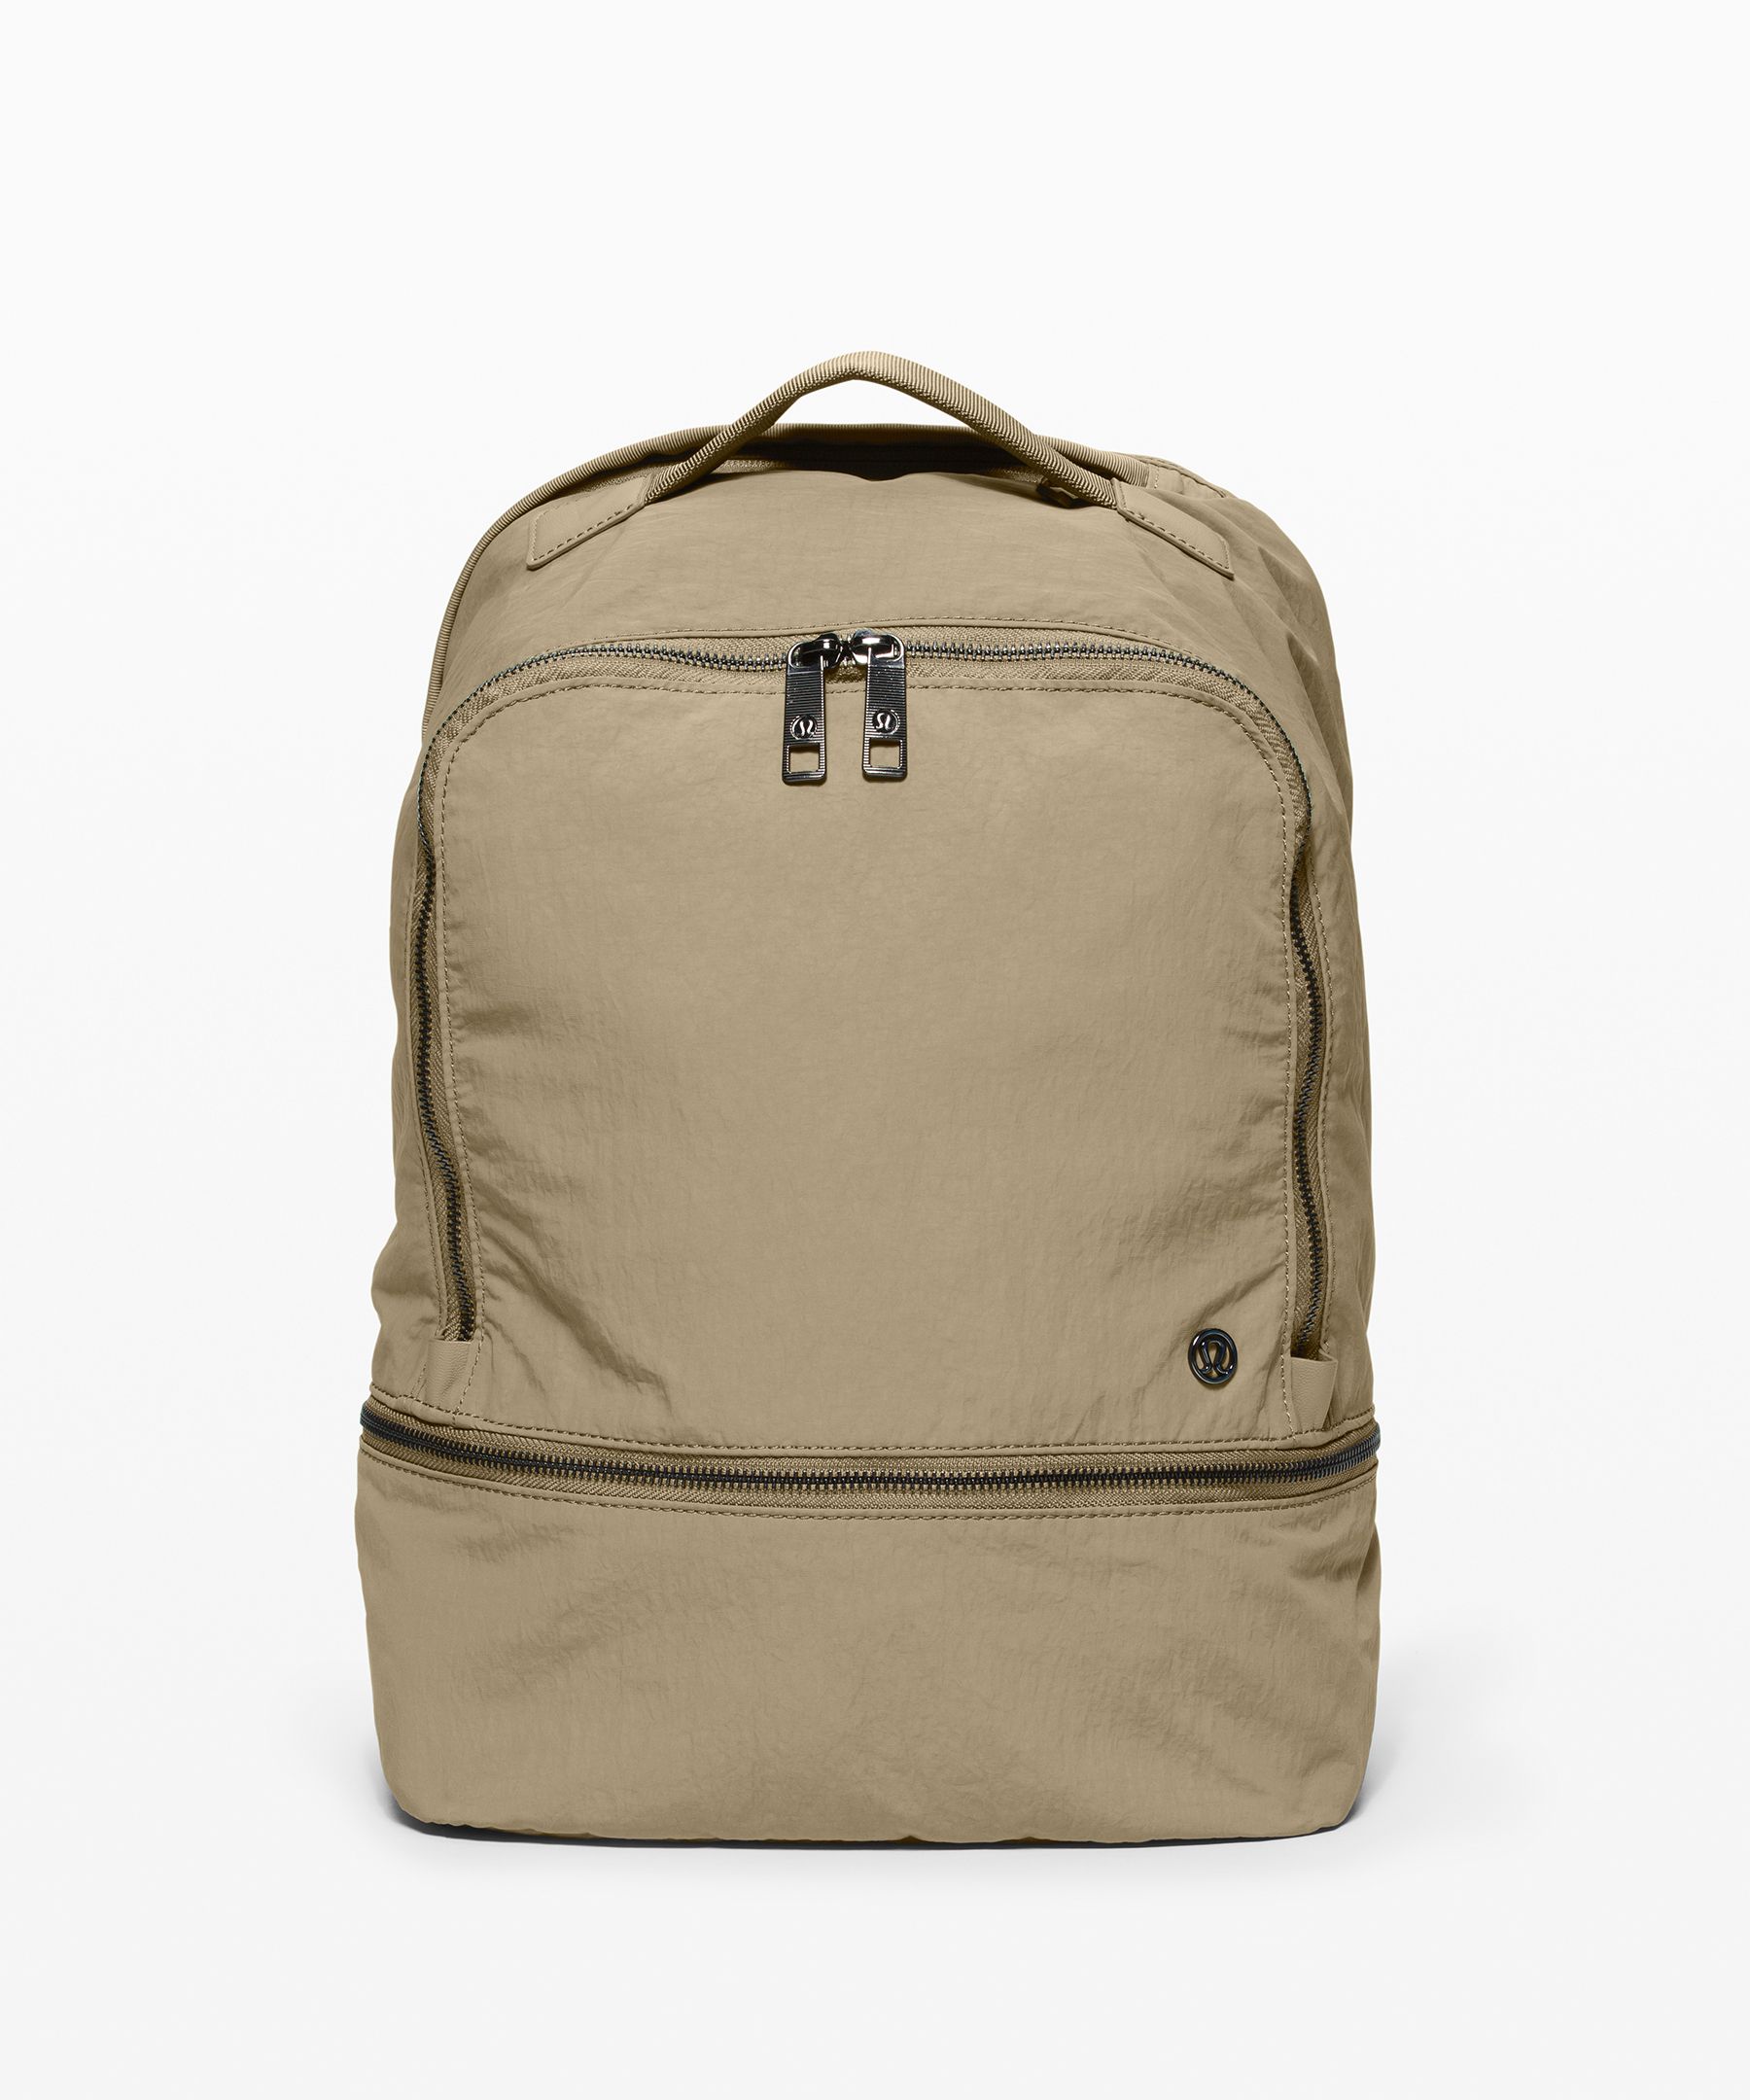 city adventurer backpack 17l